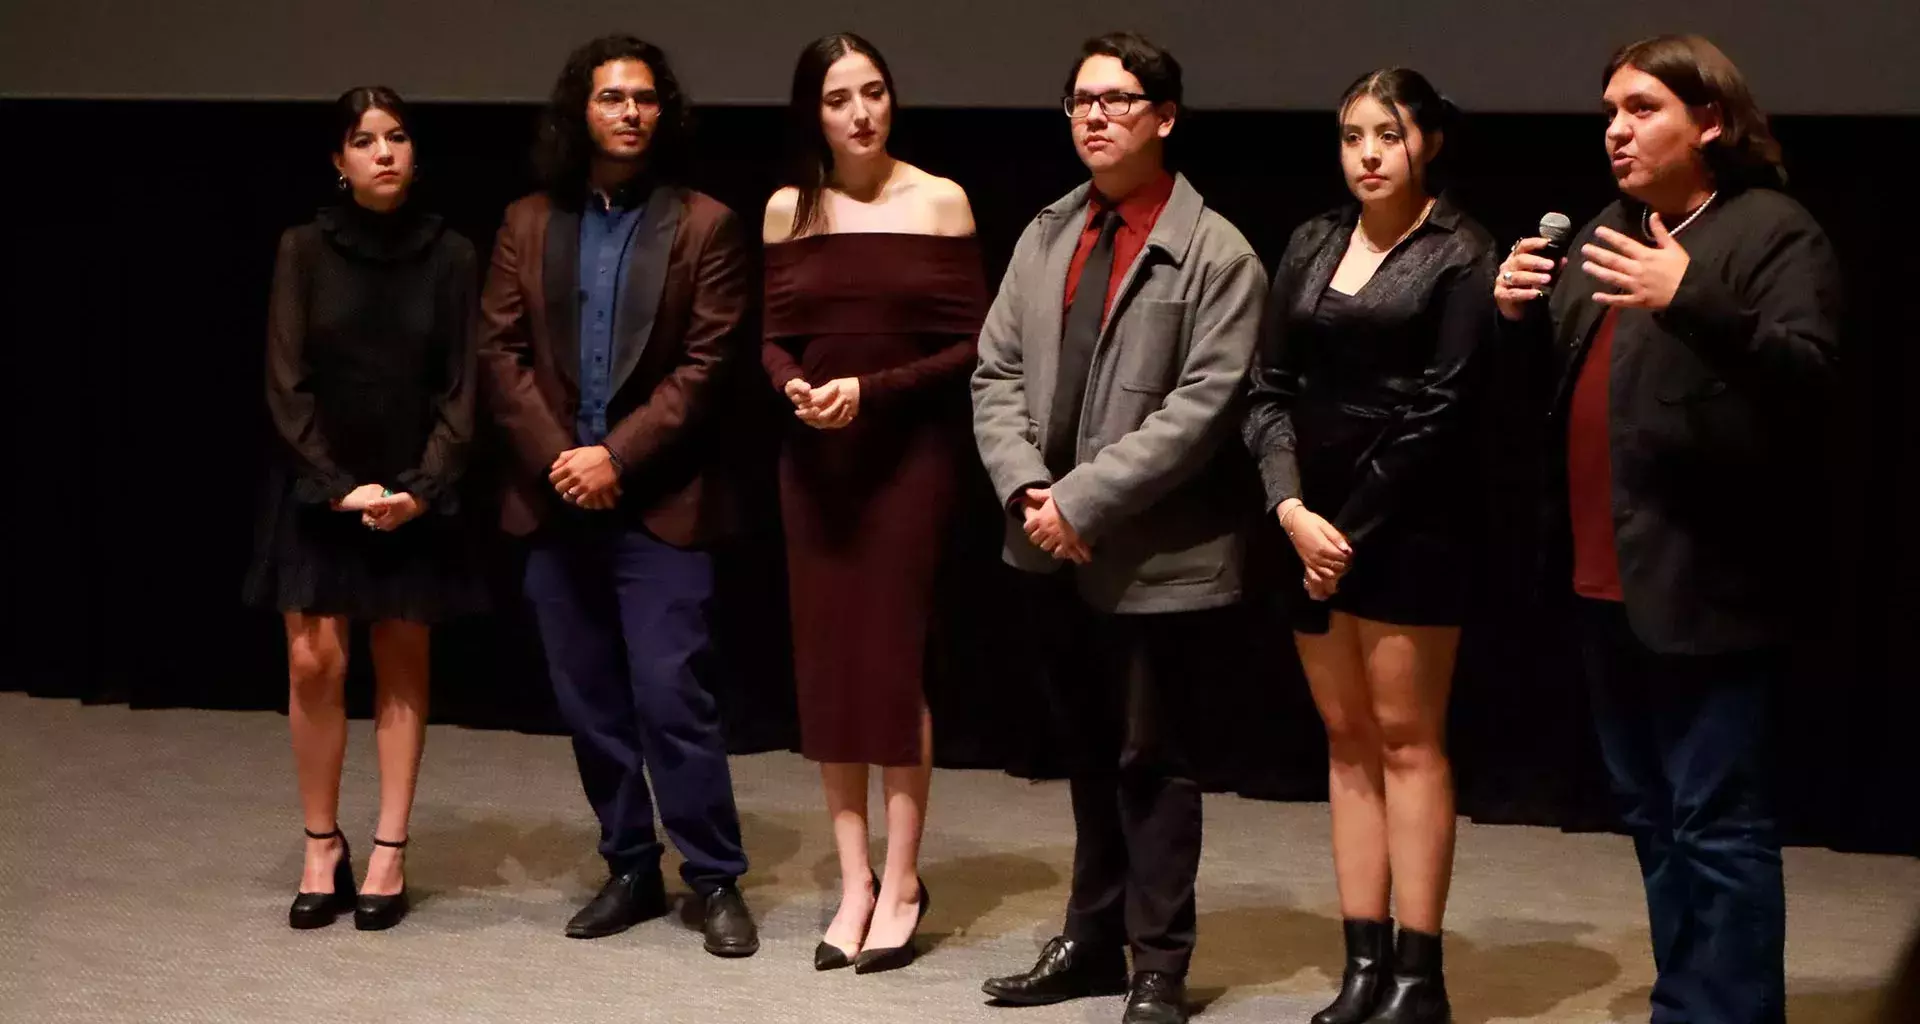 Estudiantes del Tec Guadalajara presentaron cortometraje en sala Guillermo del Toro de la cineteca del FICG. 